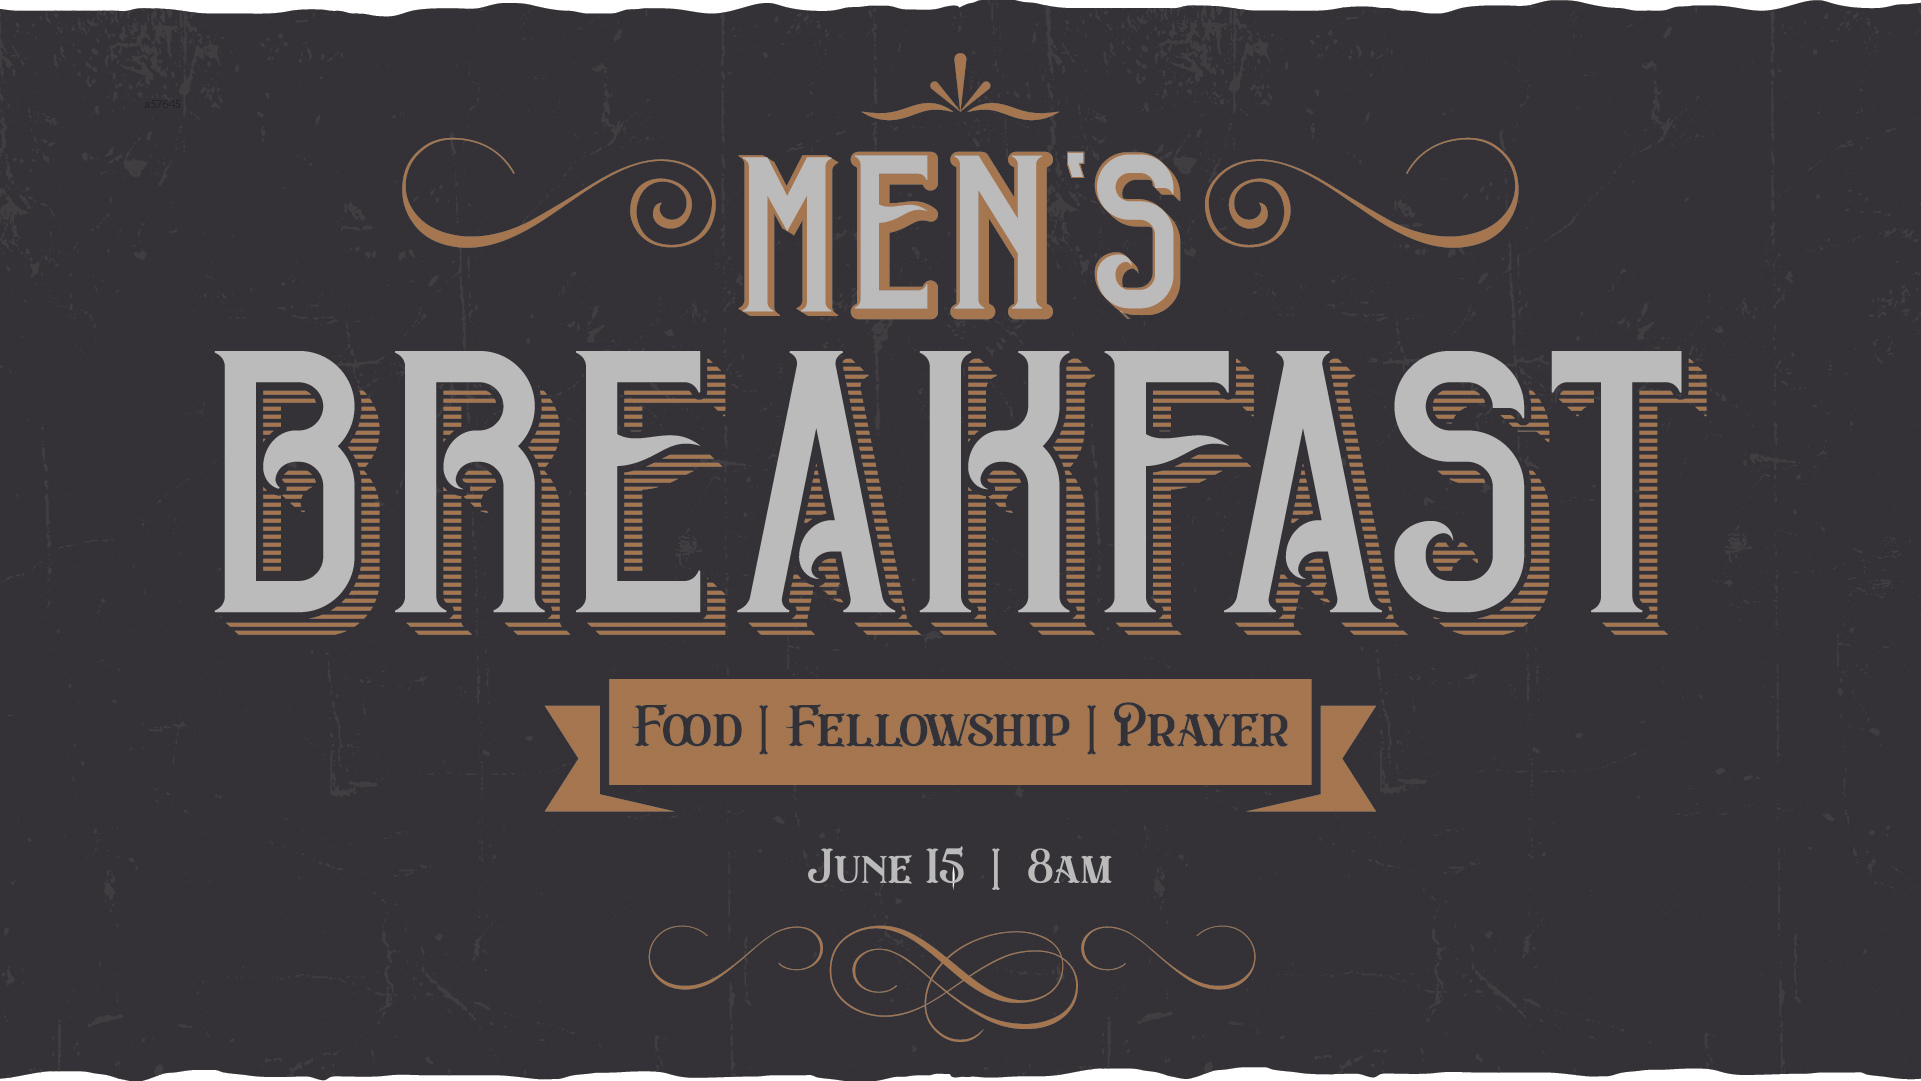 Copy of Screen - Men's Breakfast image